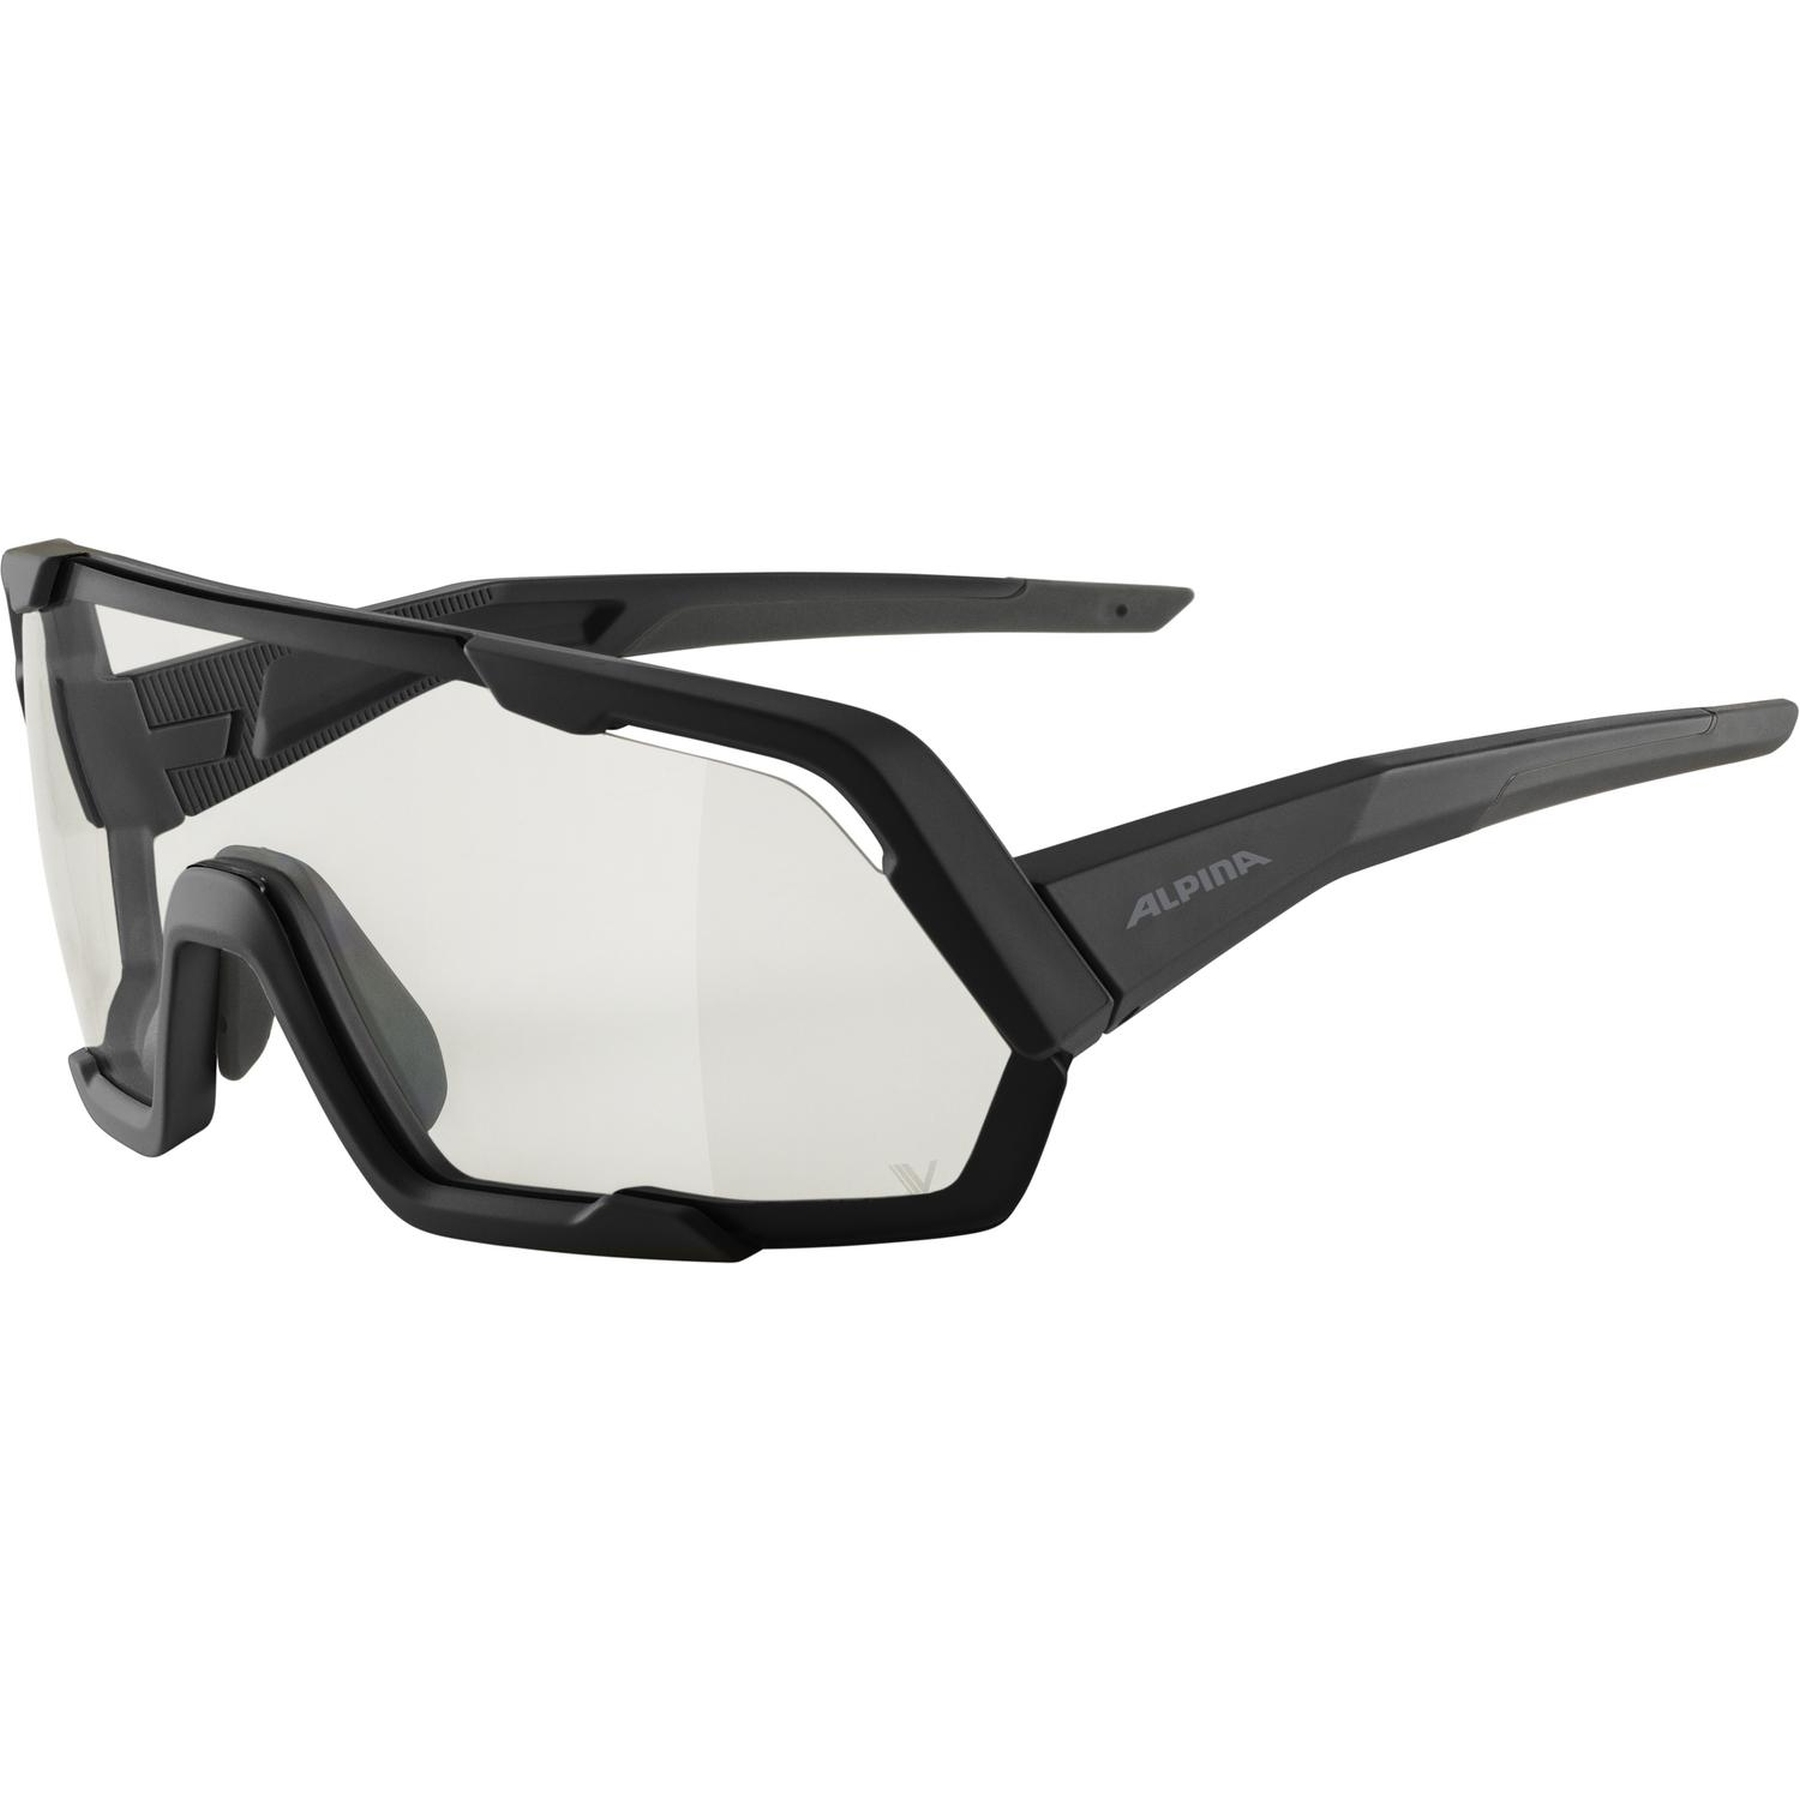 Productfoto van Alpina Rocket V Glasses - black matt/Varioflex Clear